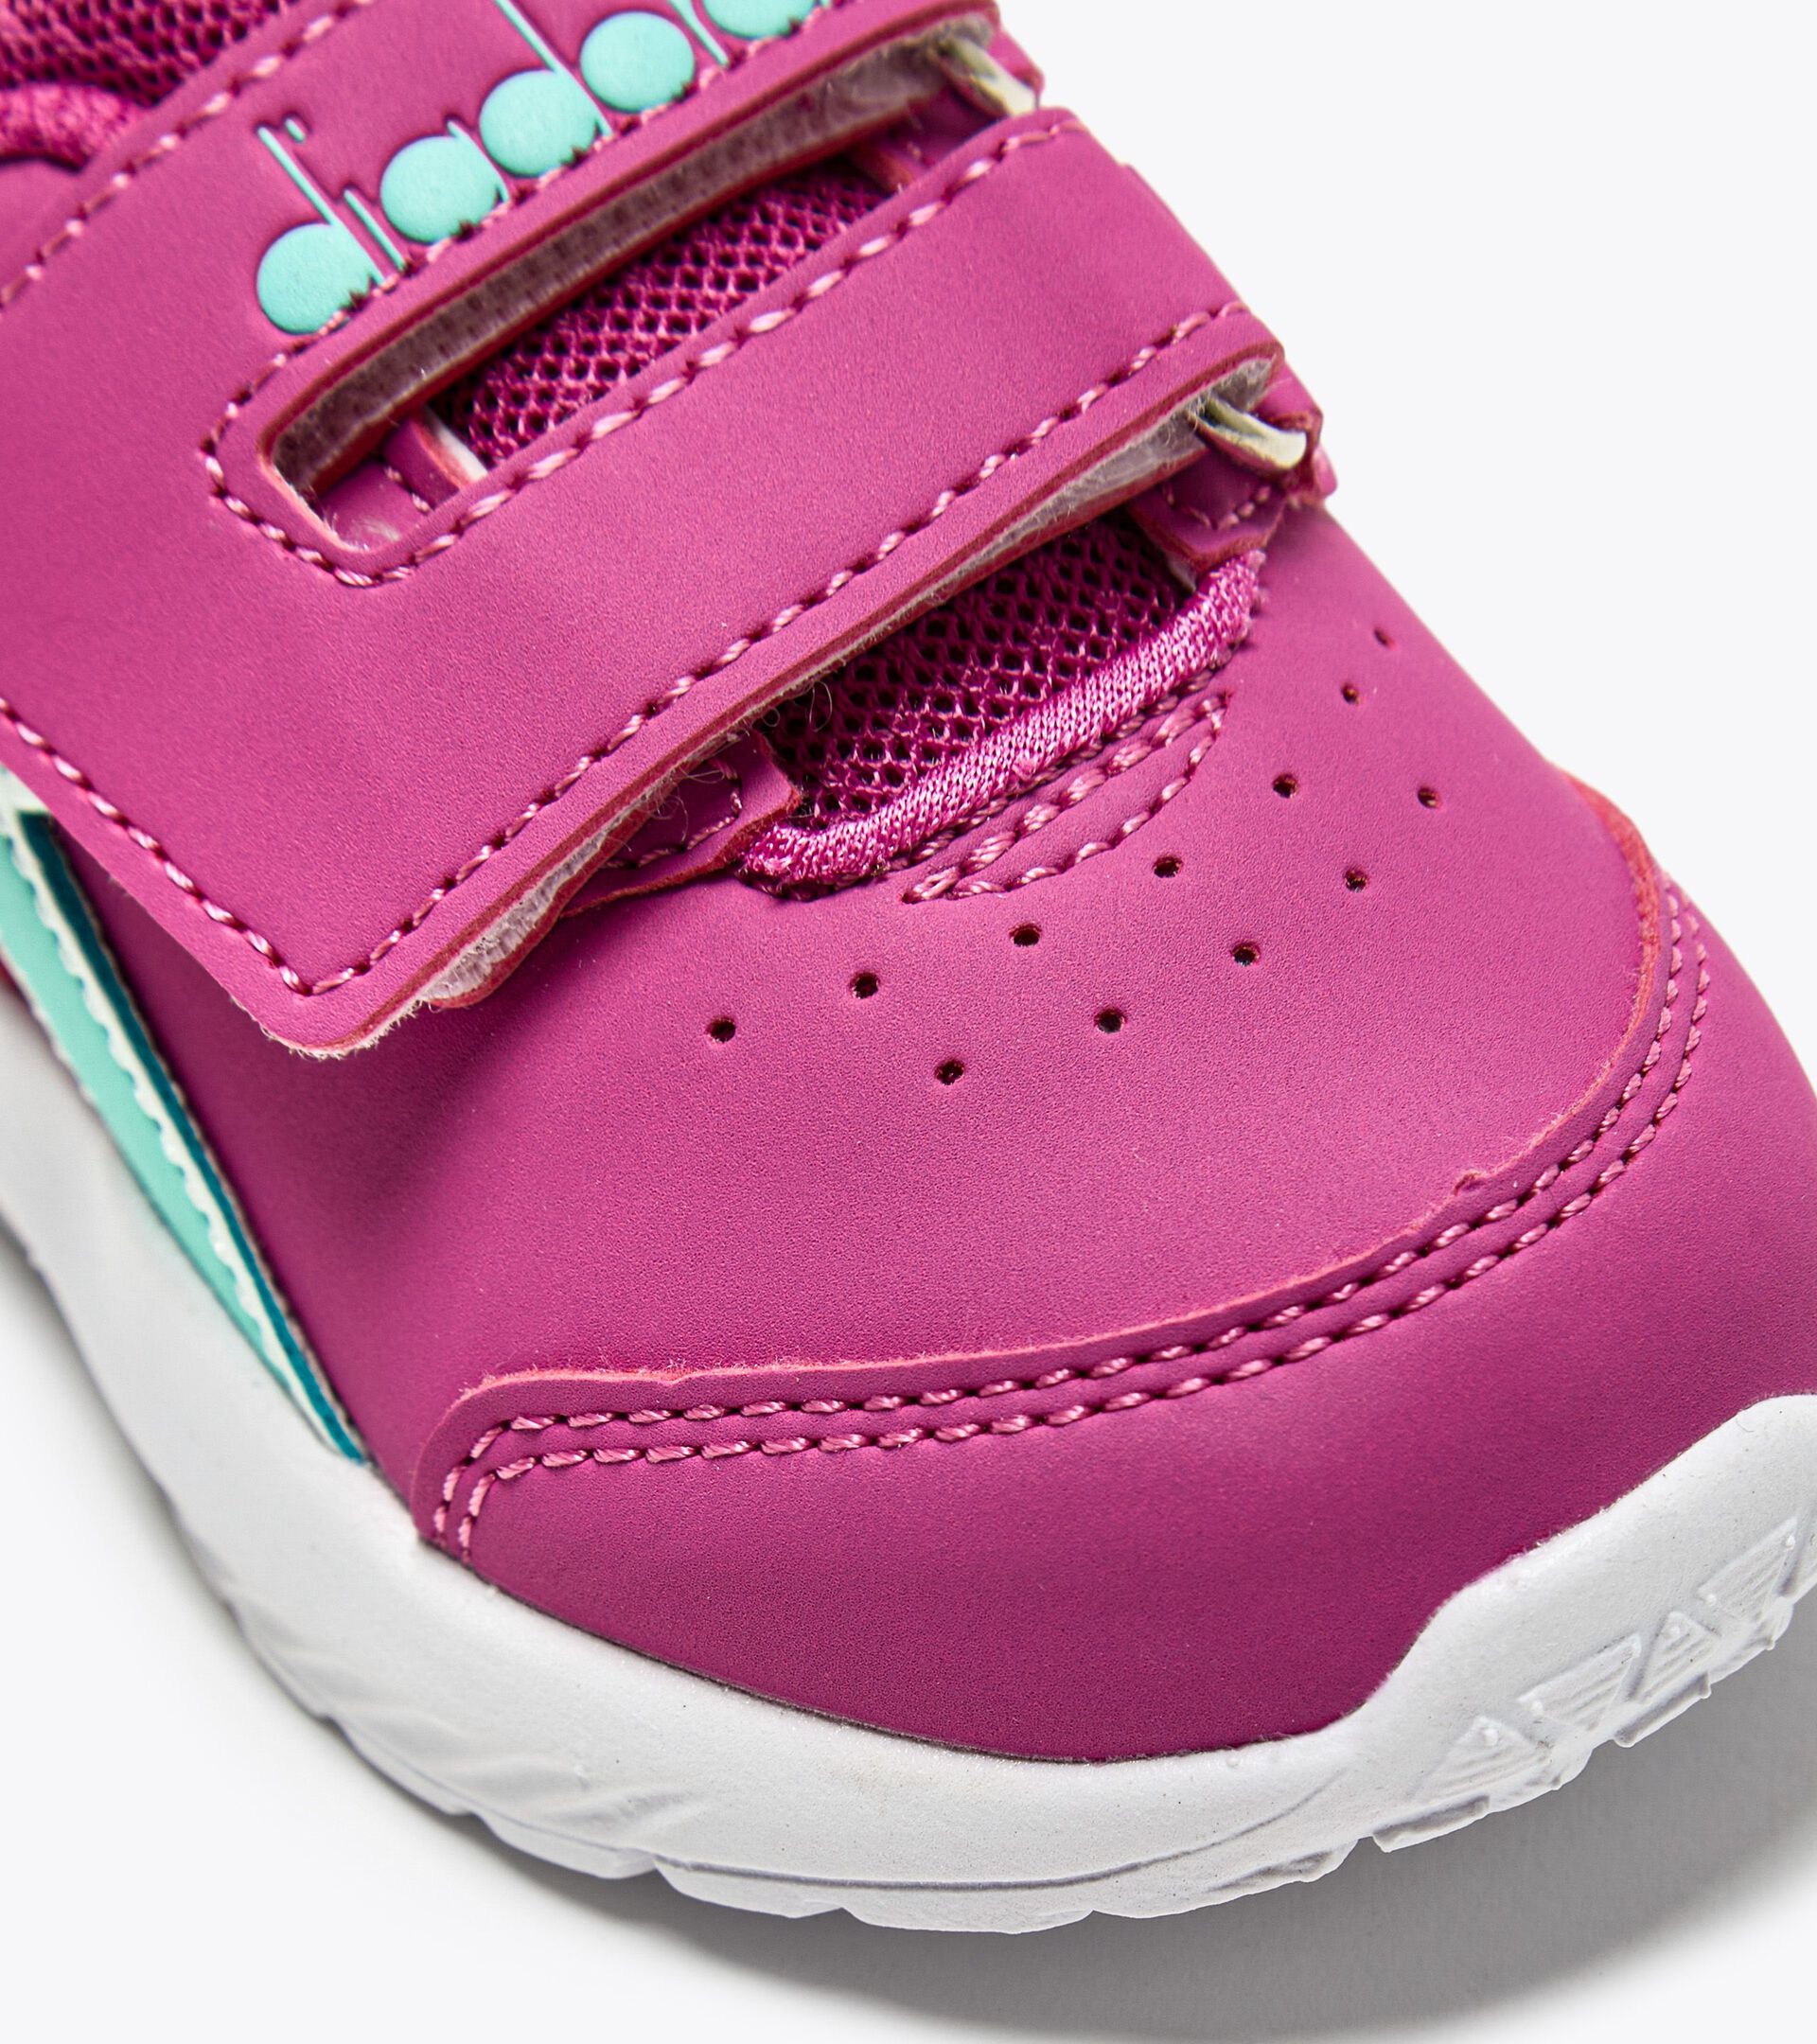 Sporty shoe for toddlers FALCON 3 SL I ROSE VIOLET/ARUBA BLUE - Diadora